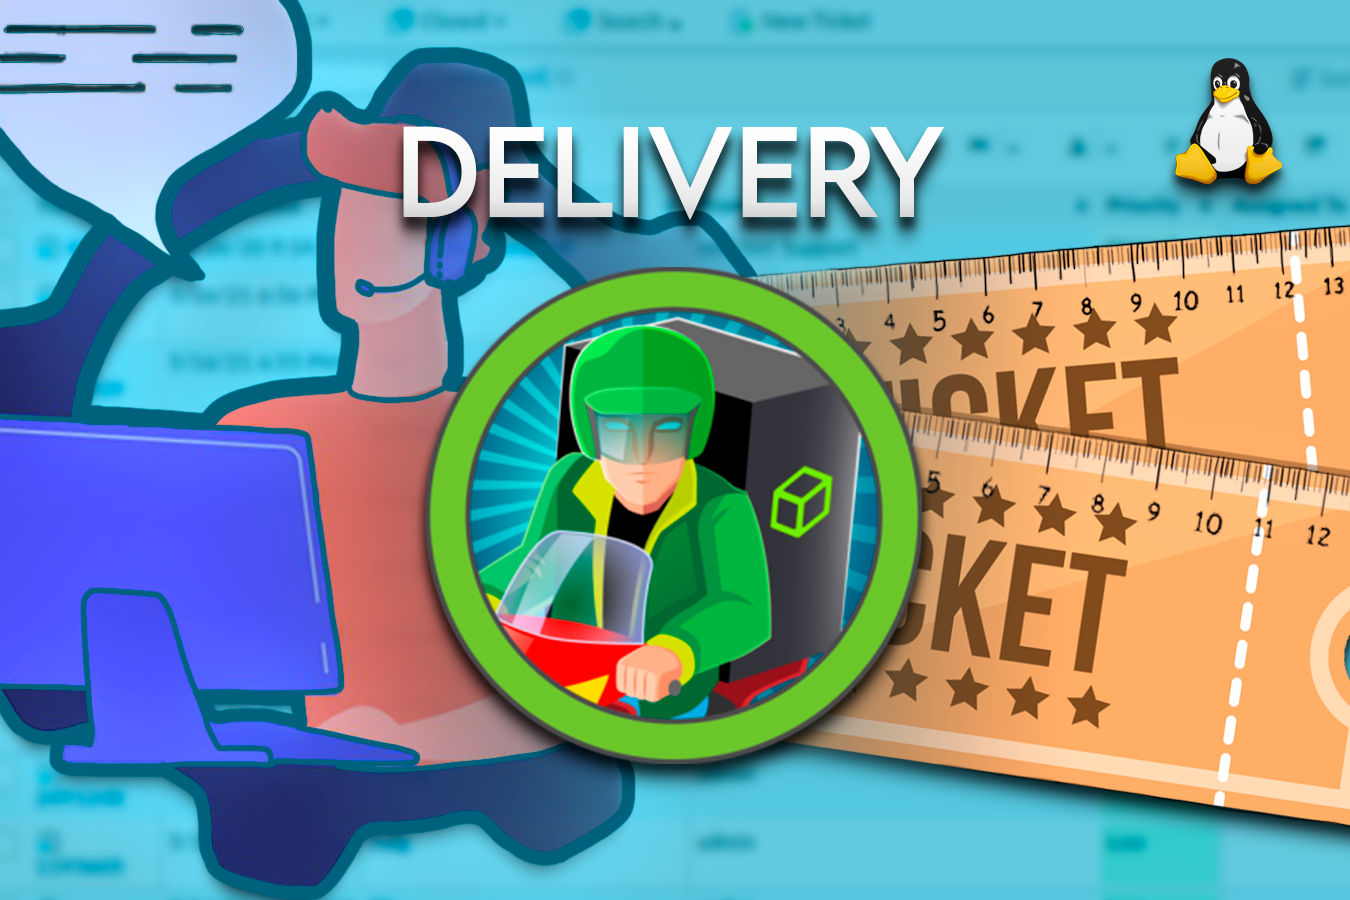 HackTheBox - Delivery